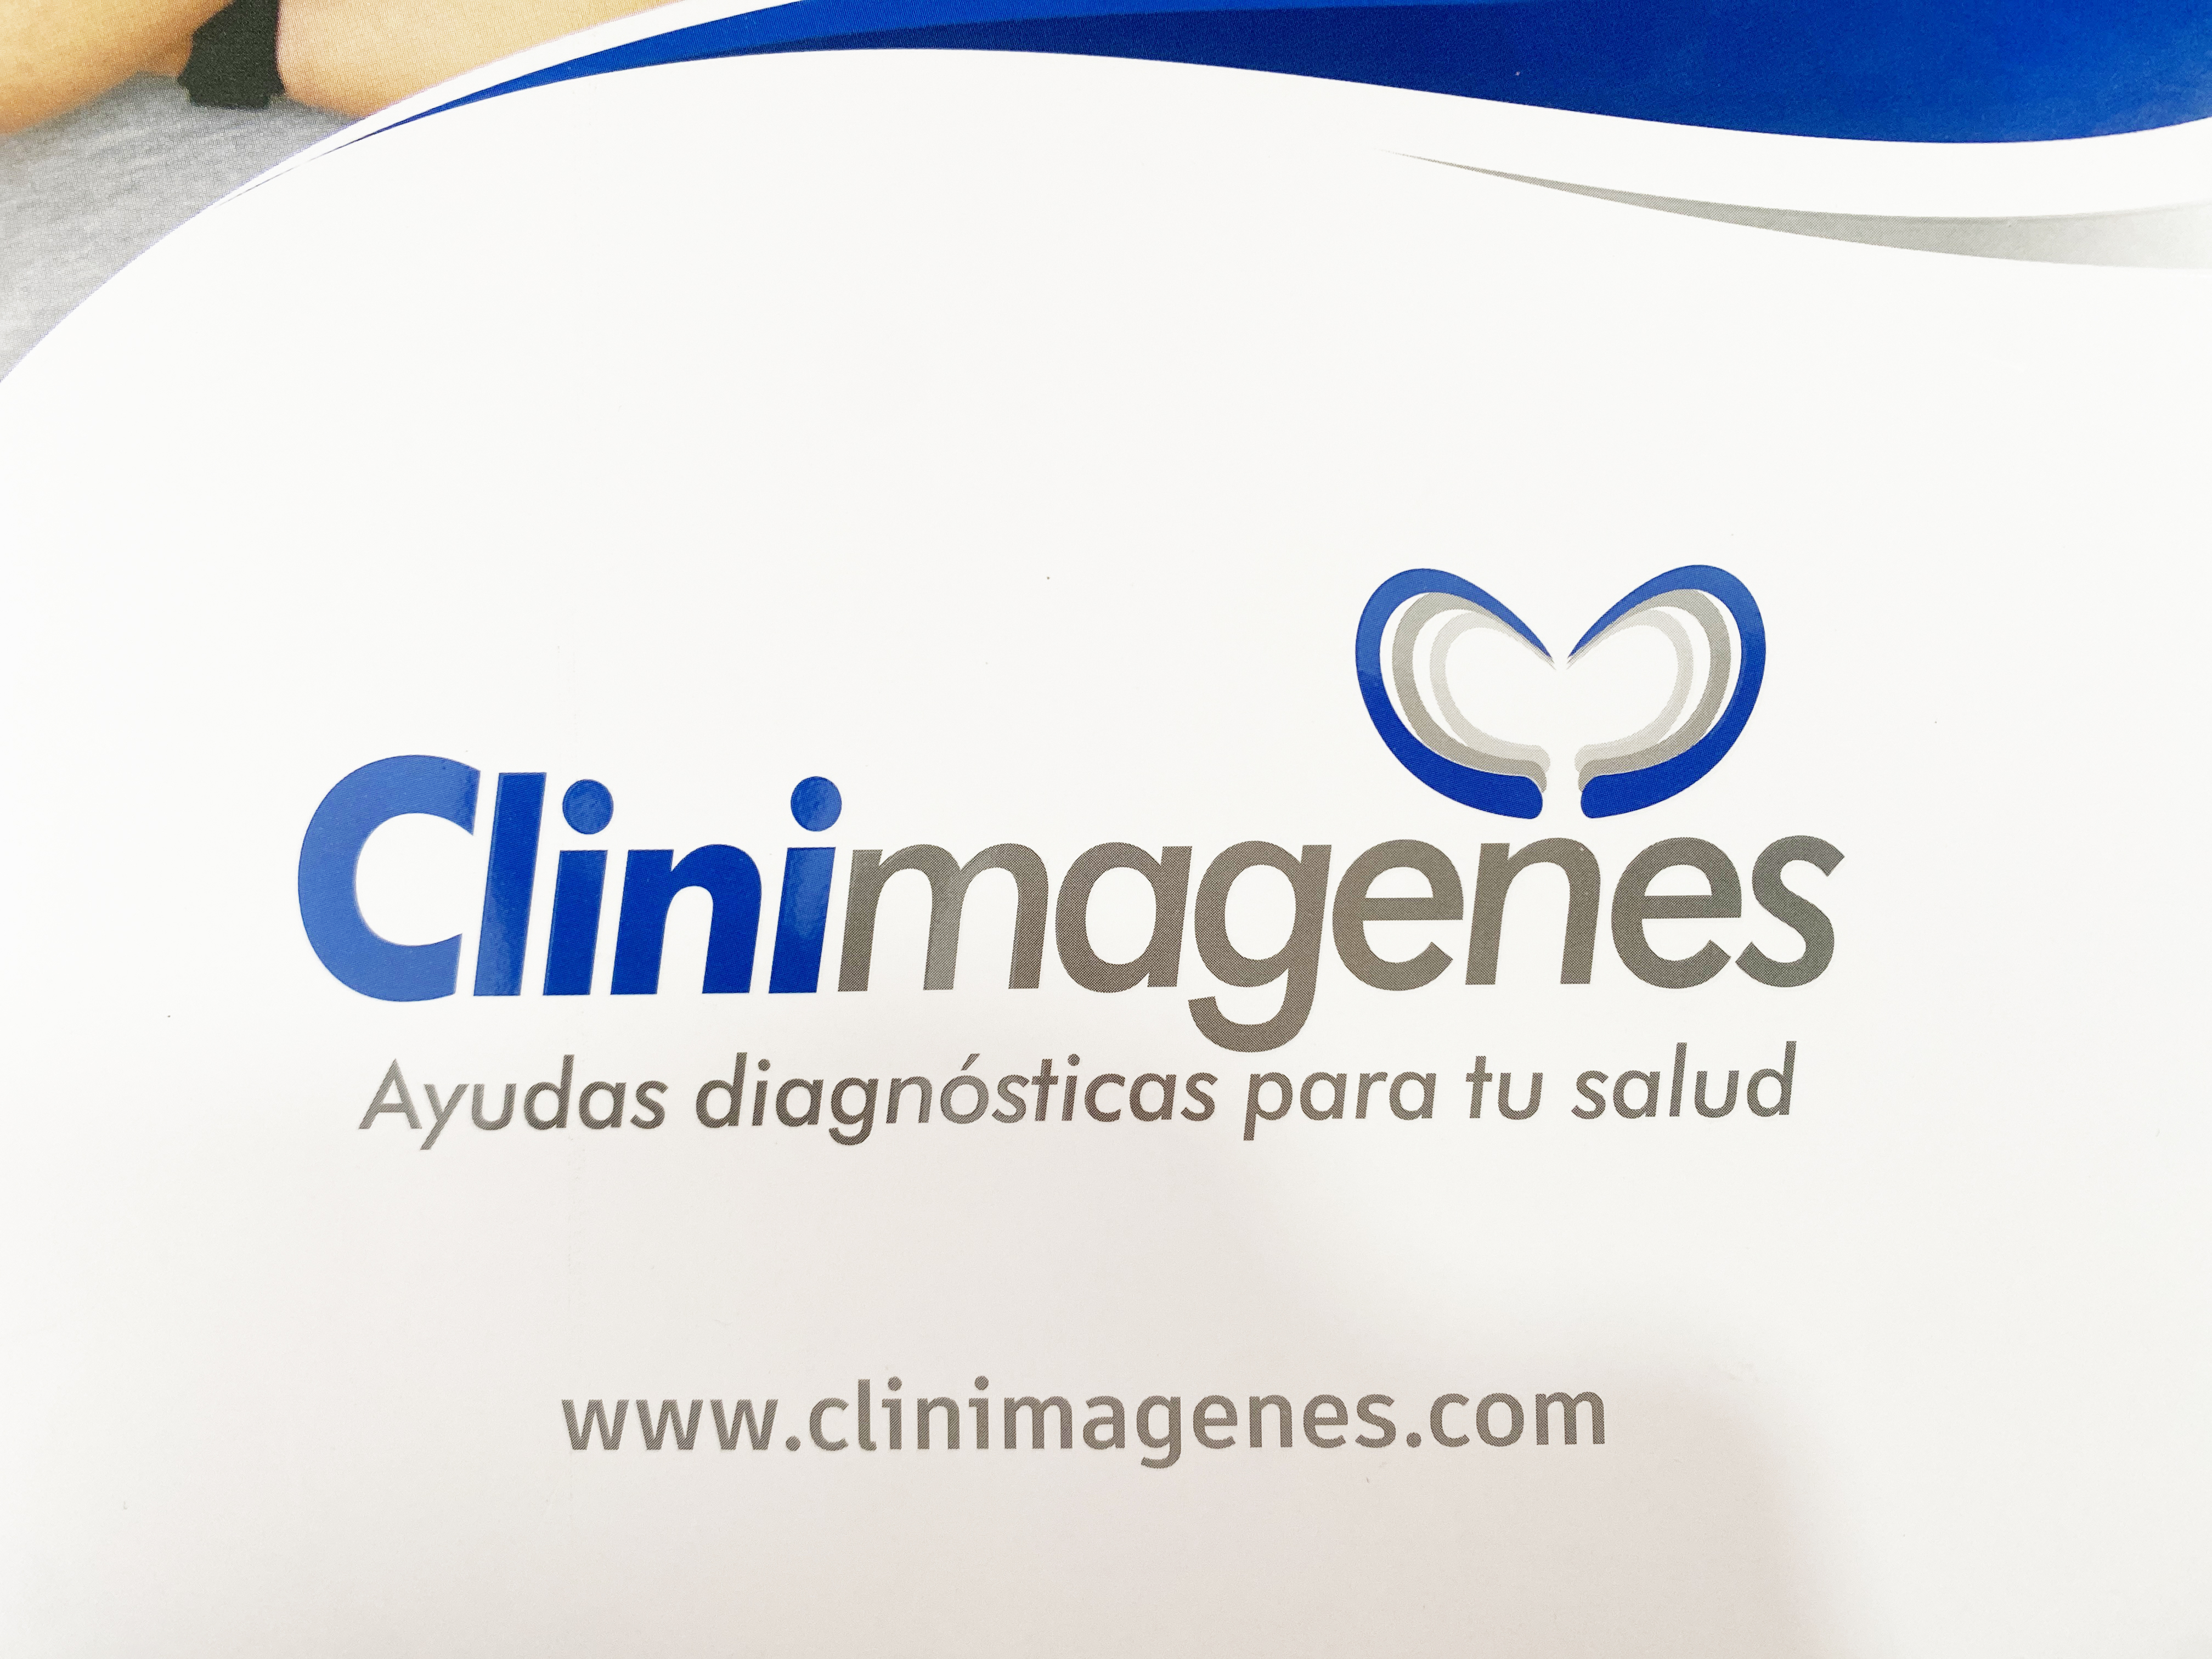 Clinimagenes